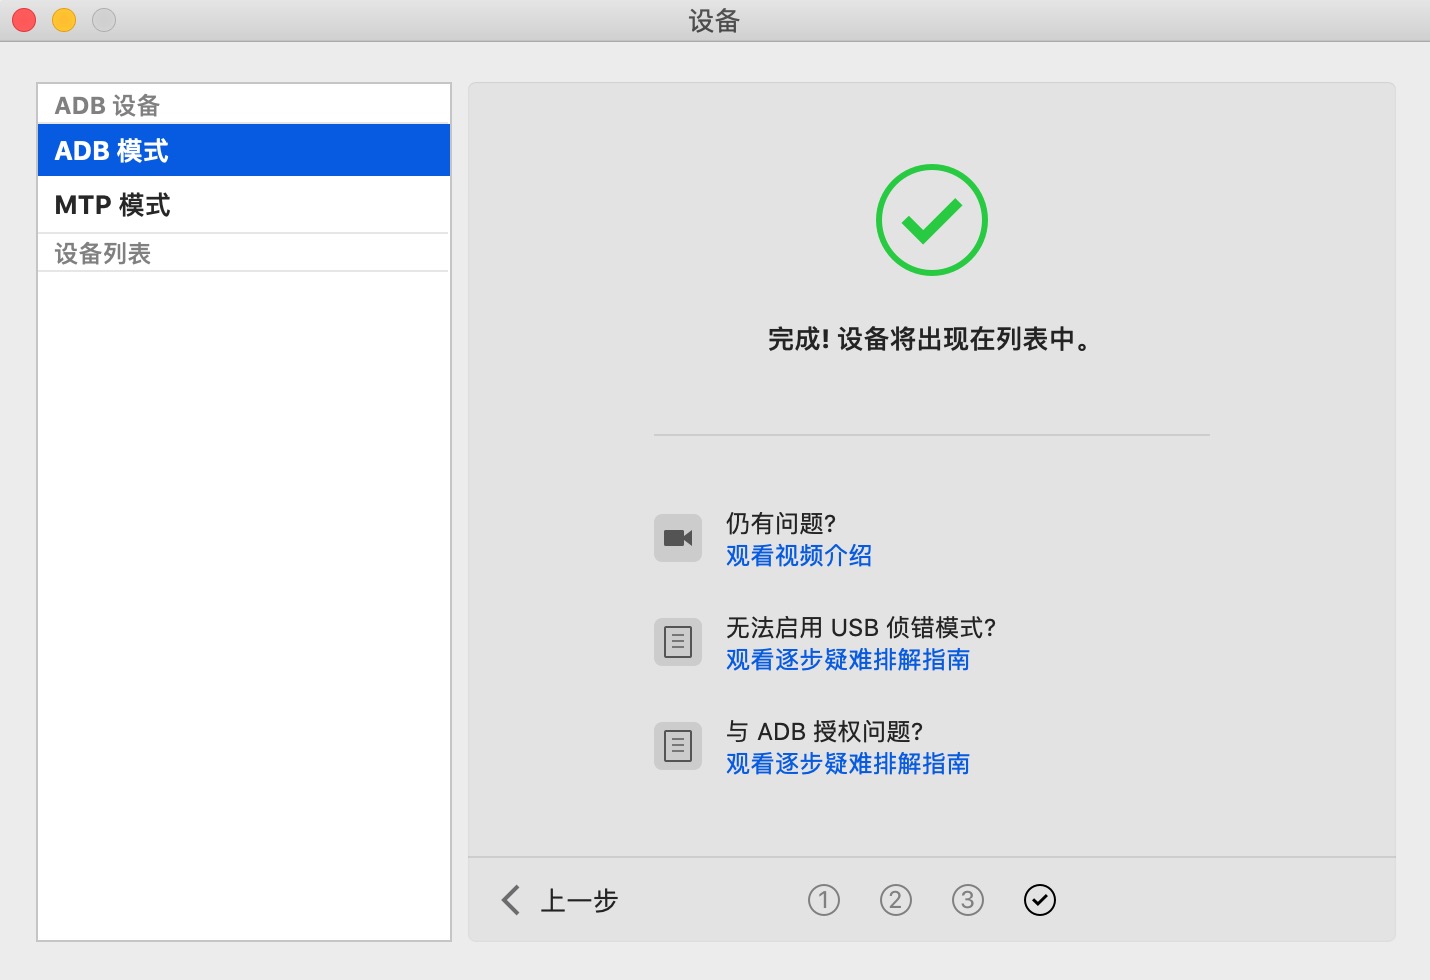 MacDroid 1.8 for Mac|Mac版下载 | 安卓手机文件管理工具